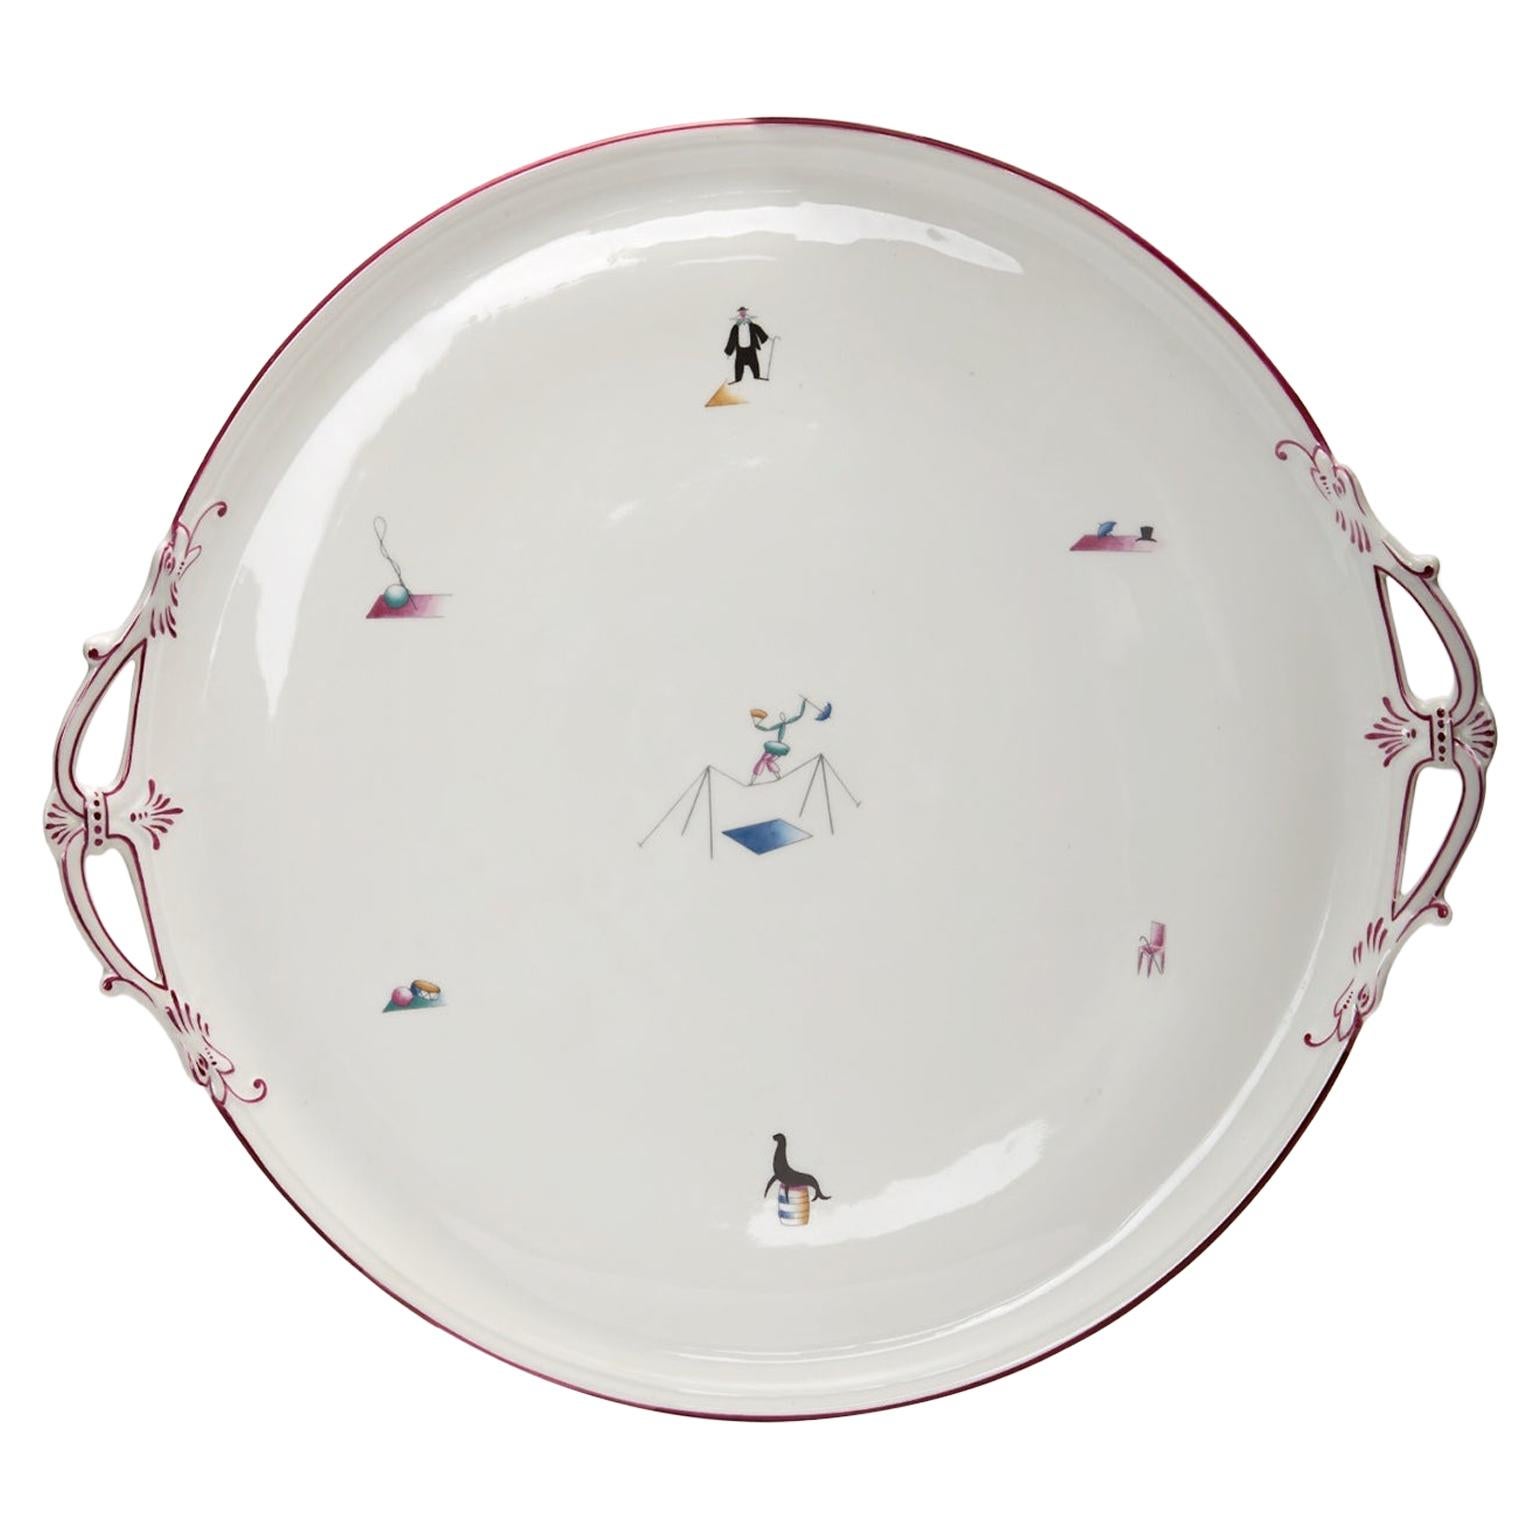 Gio Ponti porcelain 'Il Circo' Platter for Richard Ginori, Italy, 1934